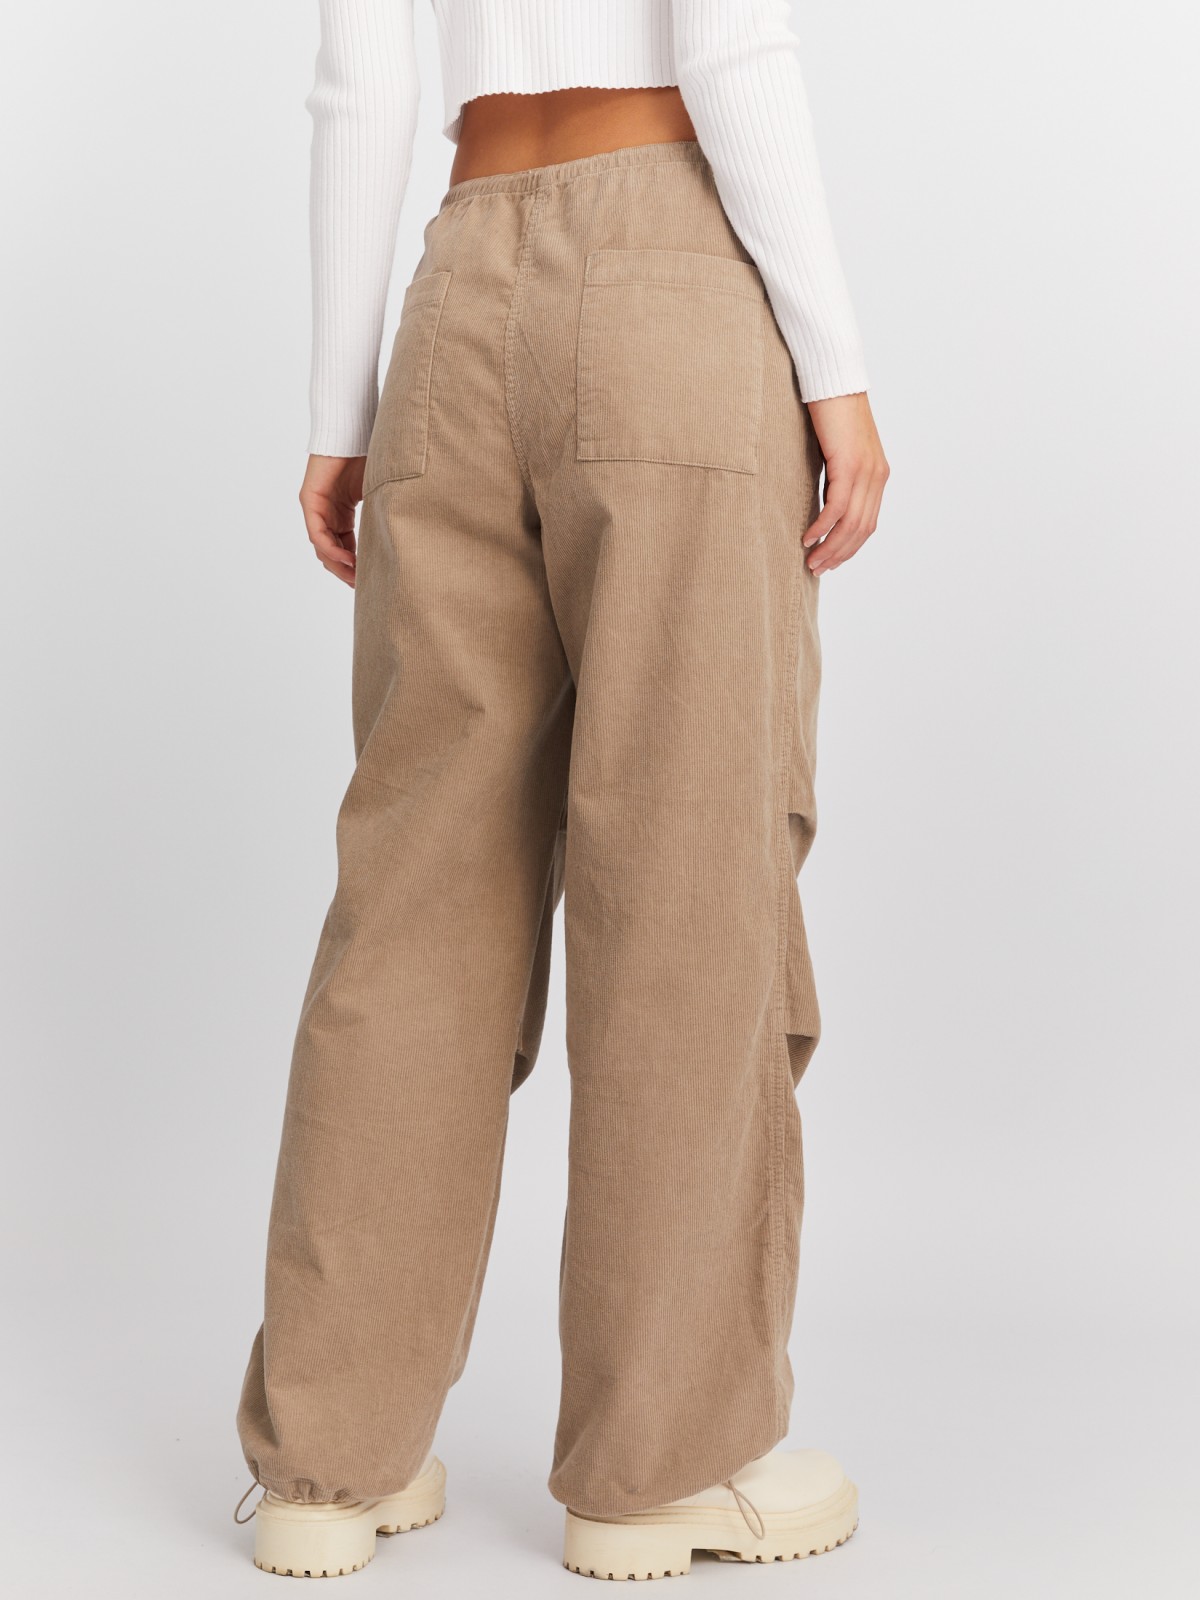 Вельветовые брюки-джоггеры на кулиске из хлопка zolla 024117359011, цвет бежевый, размер XS - фото 6